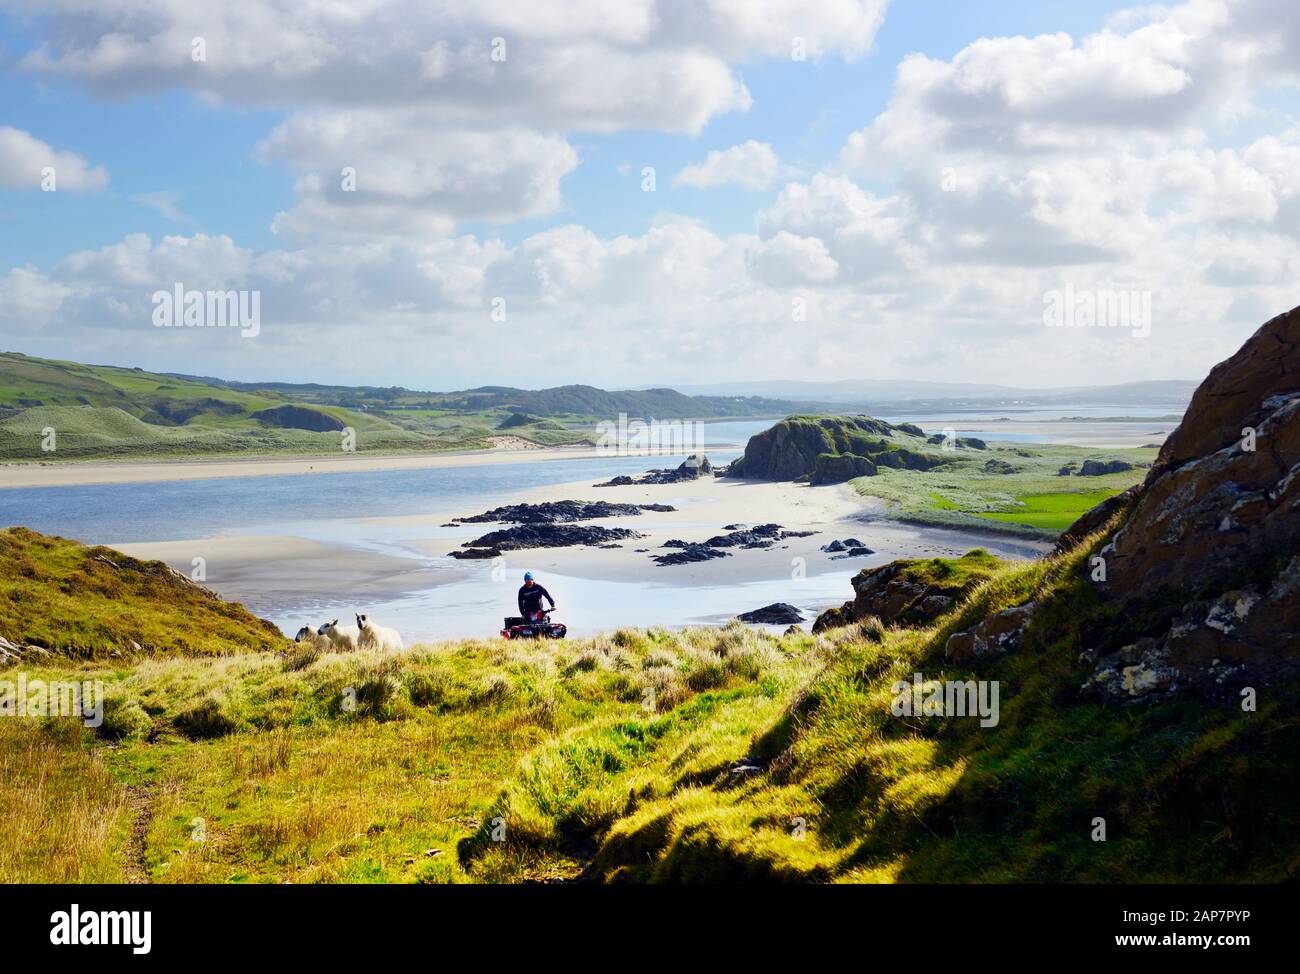 Halbinsel Inishowen, Donegal, Irland. Auf der Insel Doagh, die S.E. über die Tidal Trawbreaga Bay blickt. Bauer auf Quad-Rad, der Hügelschafe bewirtschaftet. Sommer Stockfoto